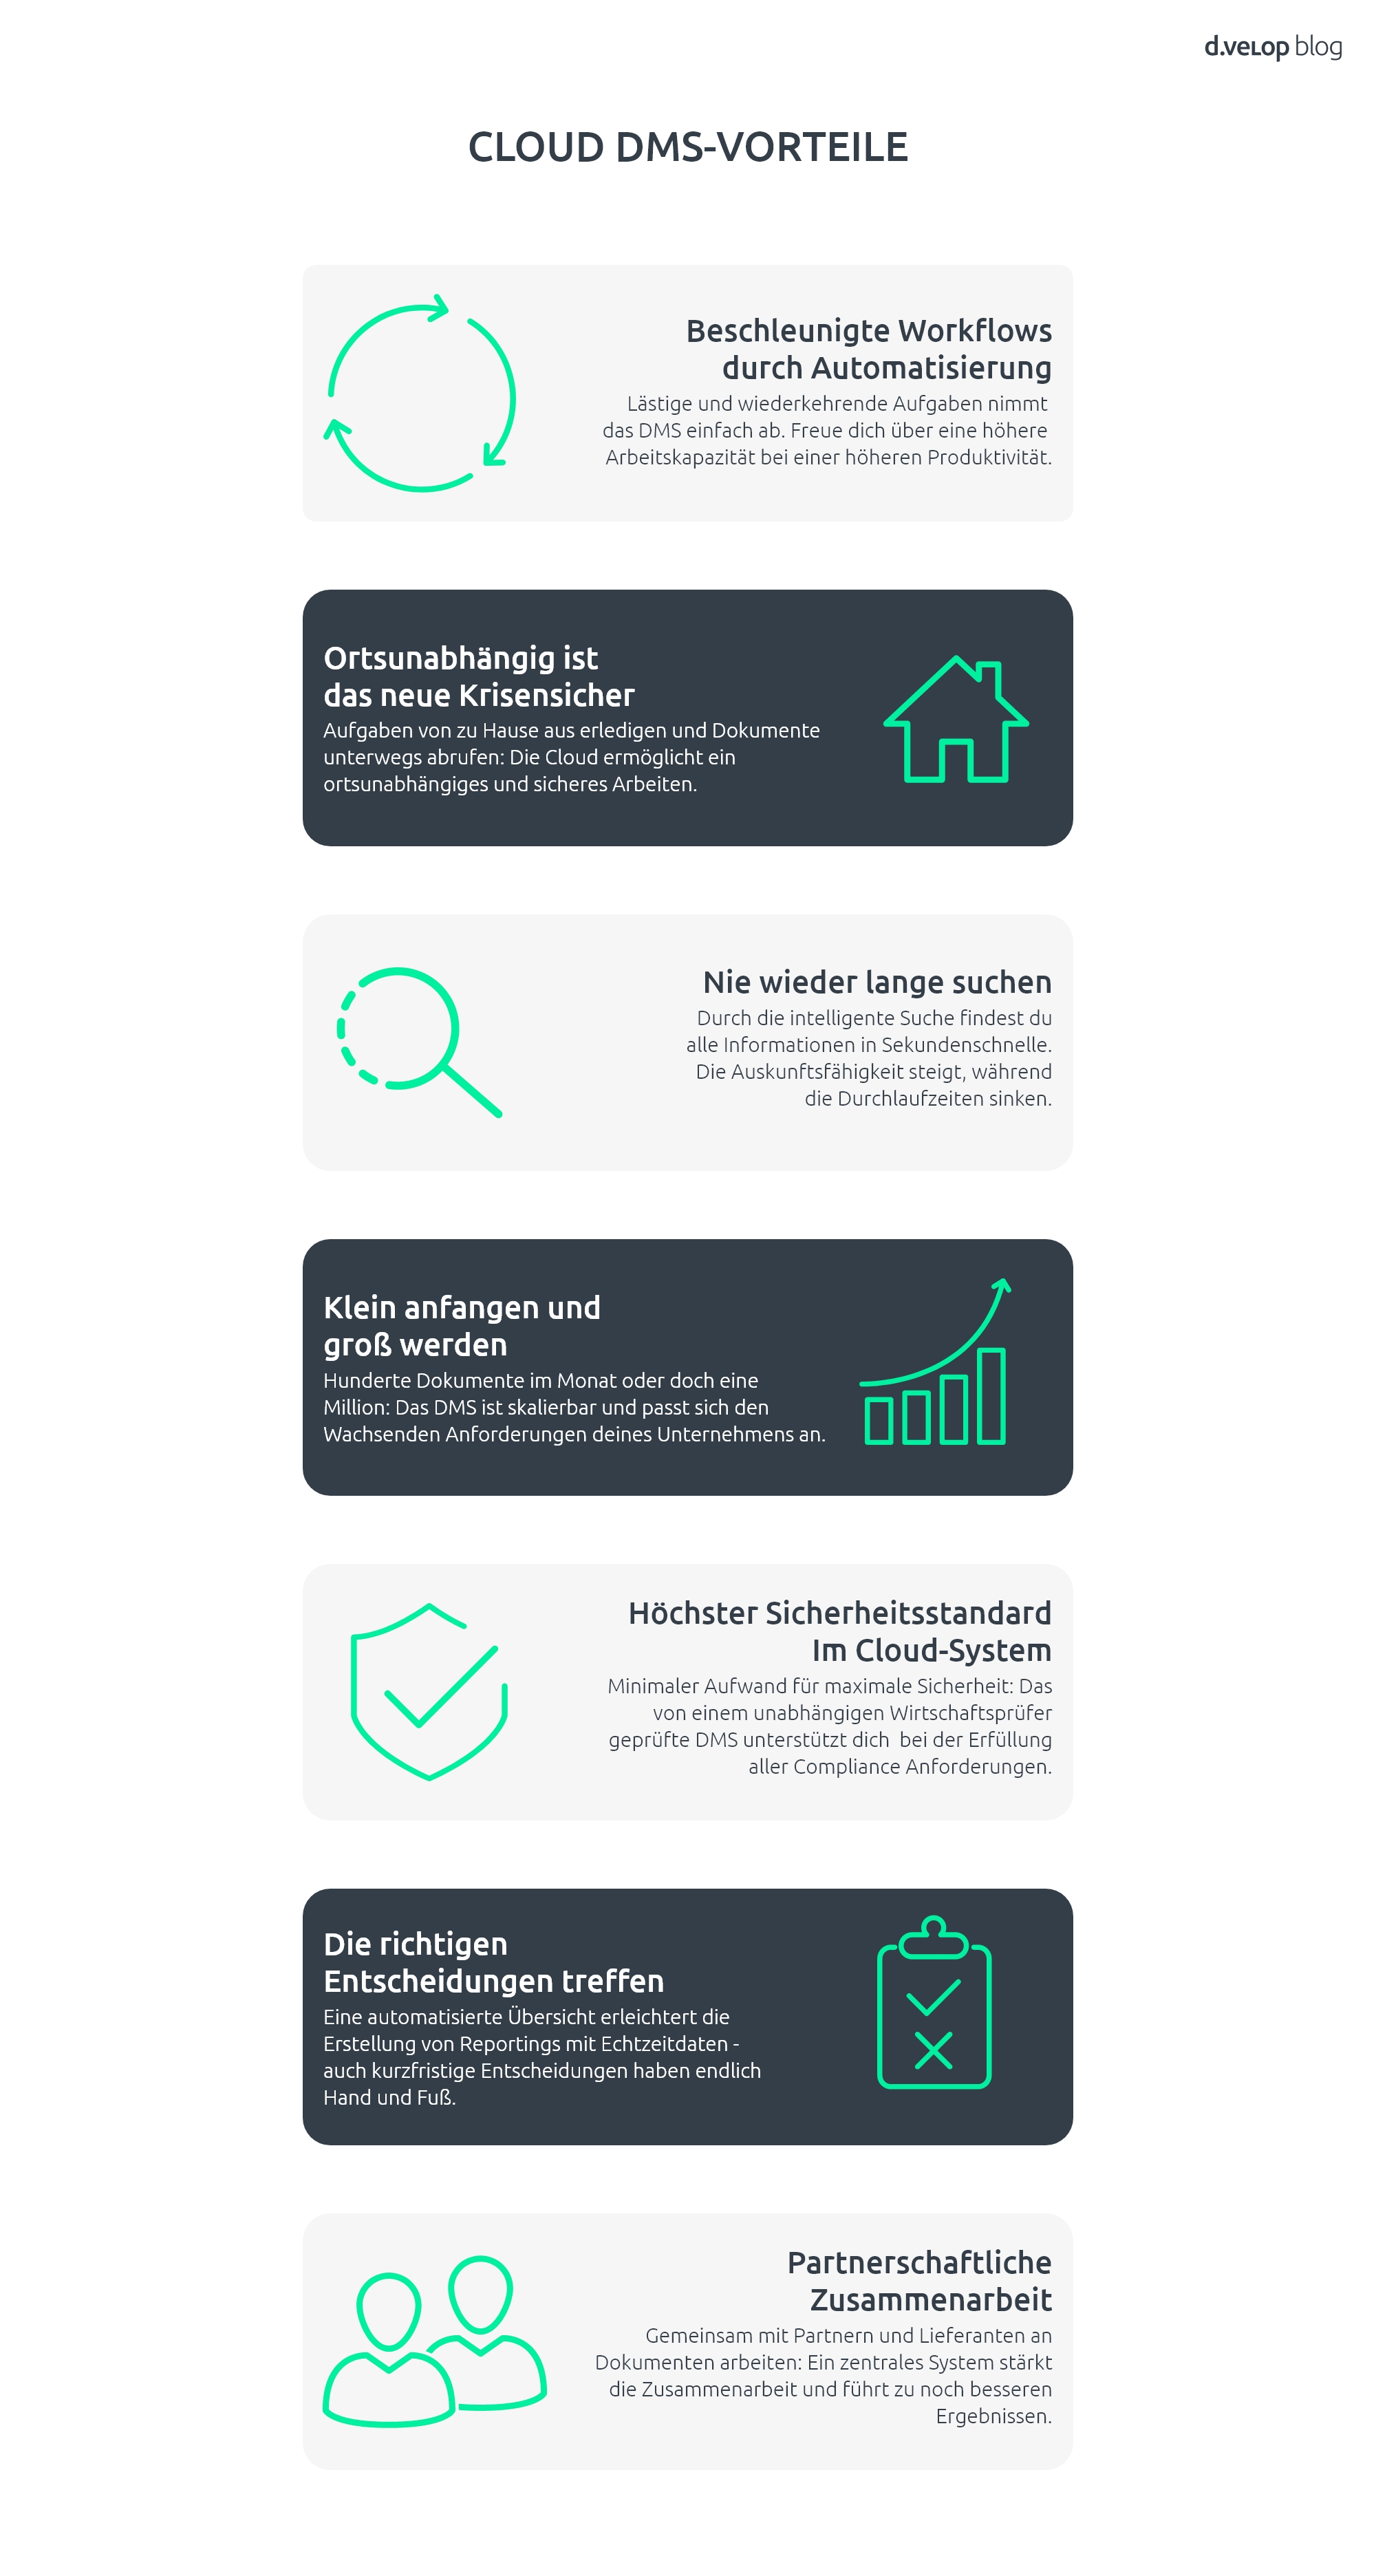 Alle Vorteile von Cloud DMS im Überblick